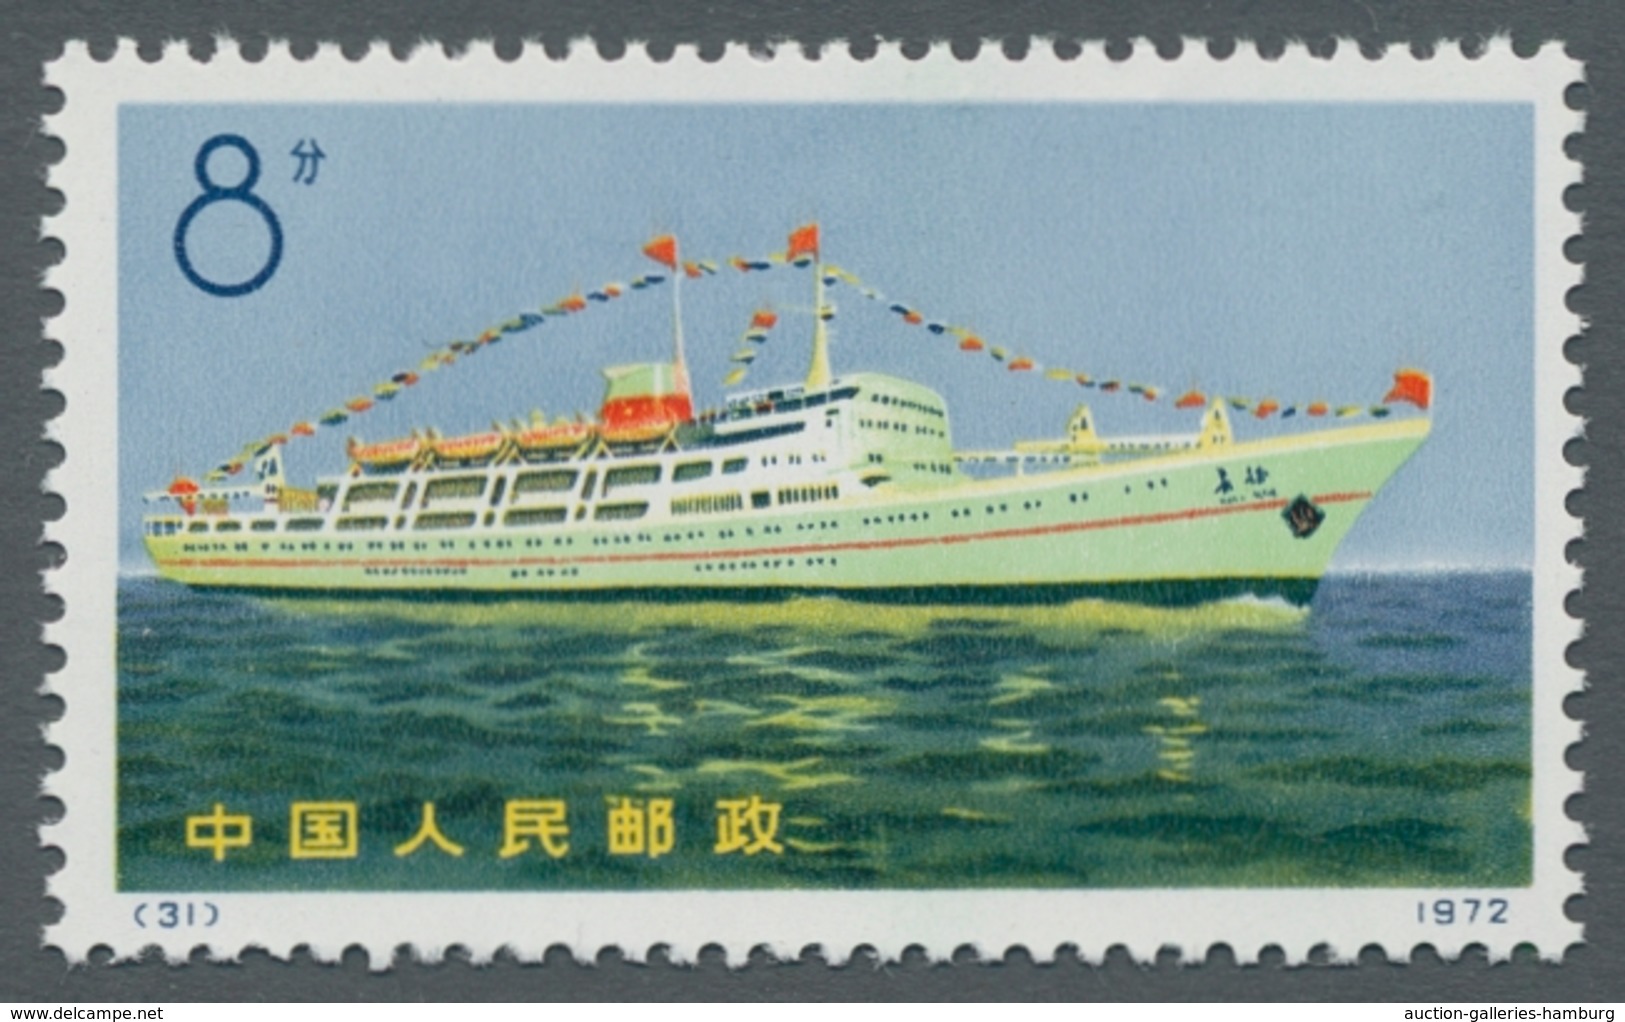 China - Volksrepublik: 1972; Handelsschiffe 4 Werte komplett ungebraucht wie verausgabt in tadellose